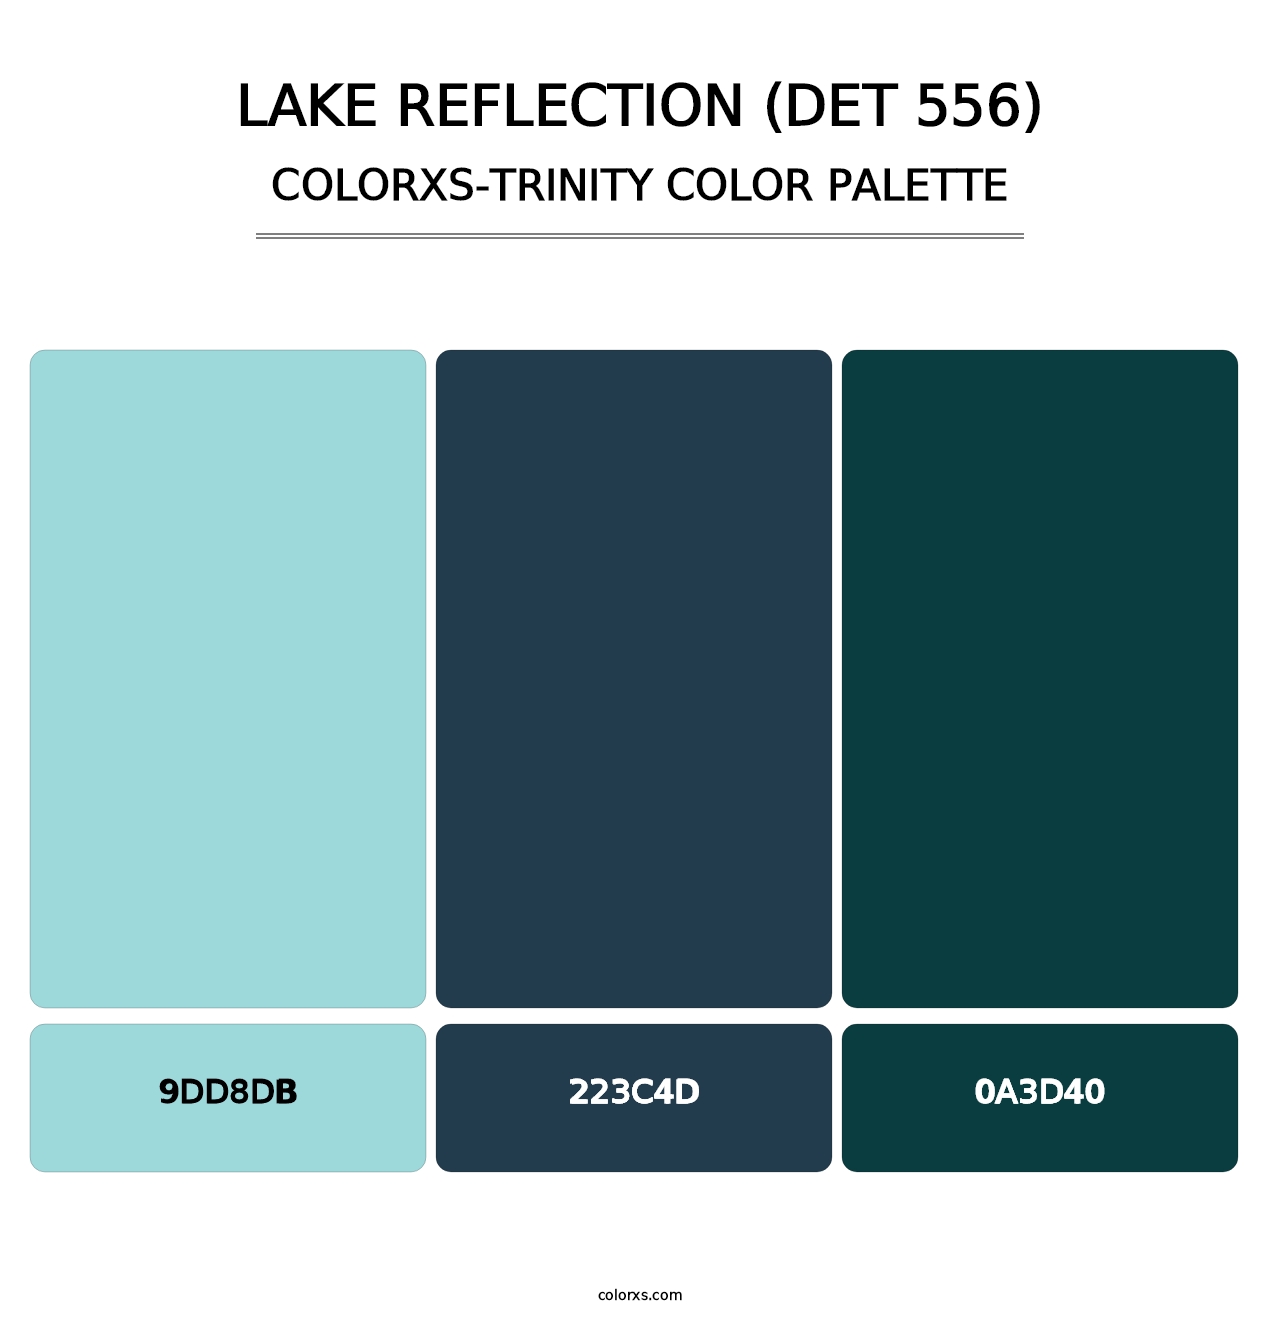 Lake Reflection (DET 556) - Colorxs Trinity Palette